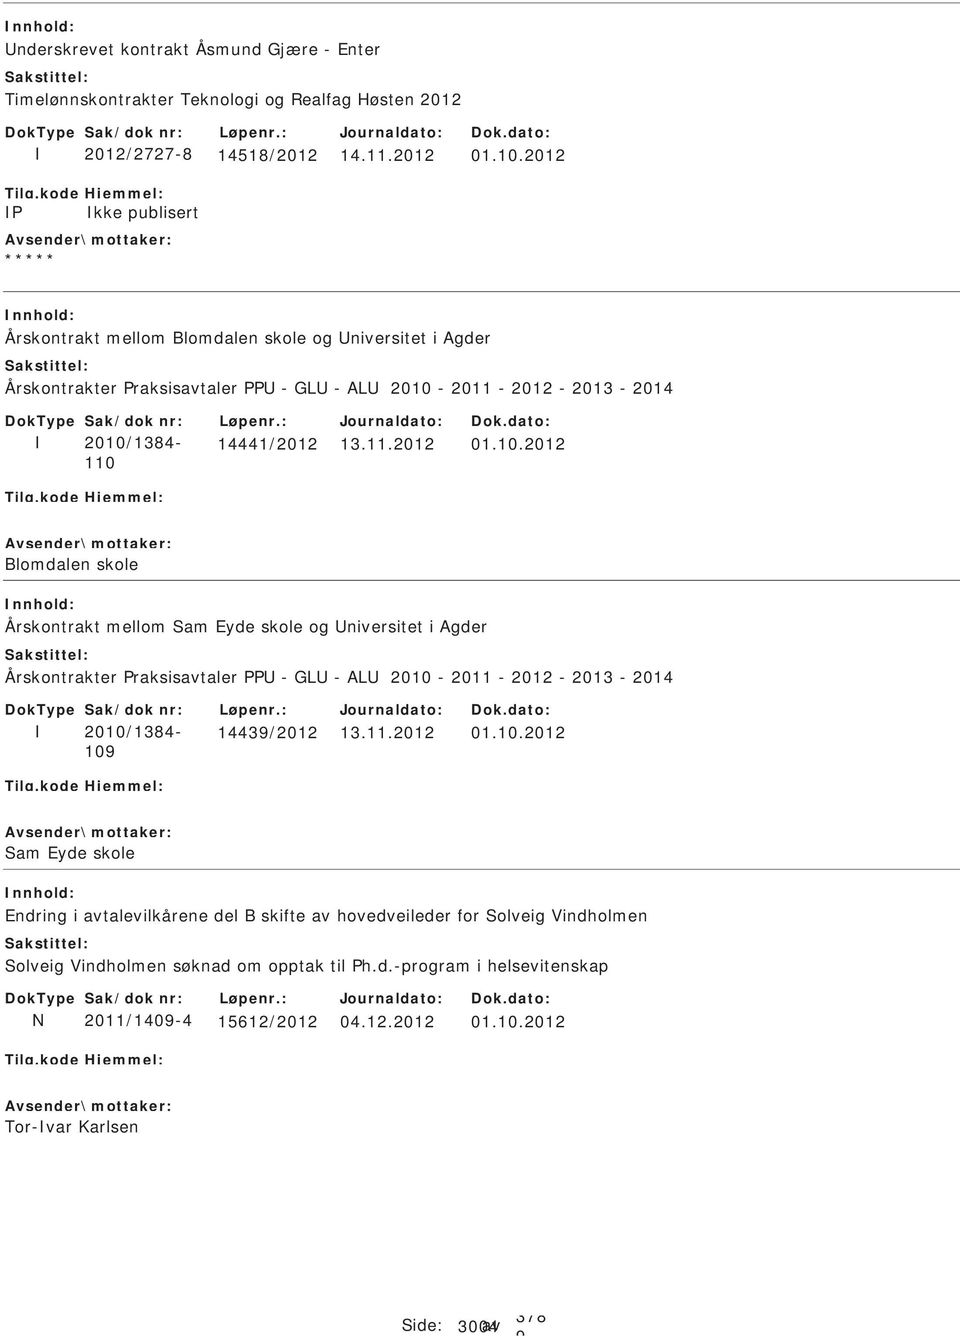 2011 - 2012-2013 - 2014 ak/dok nr: 2010/